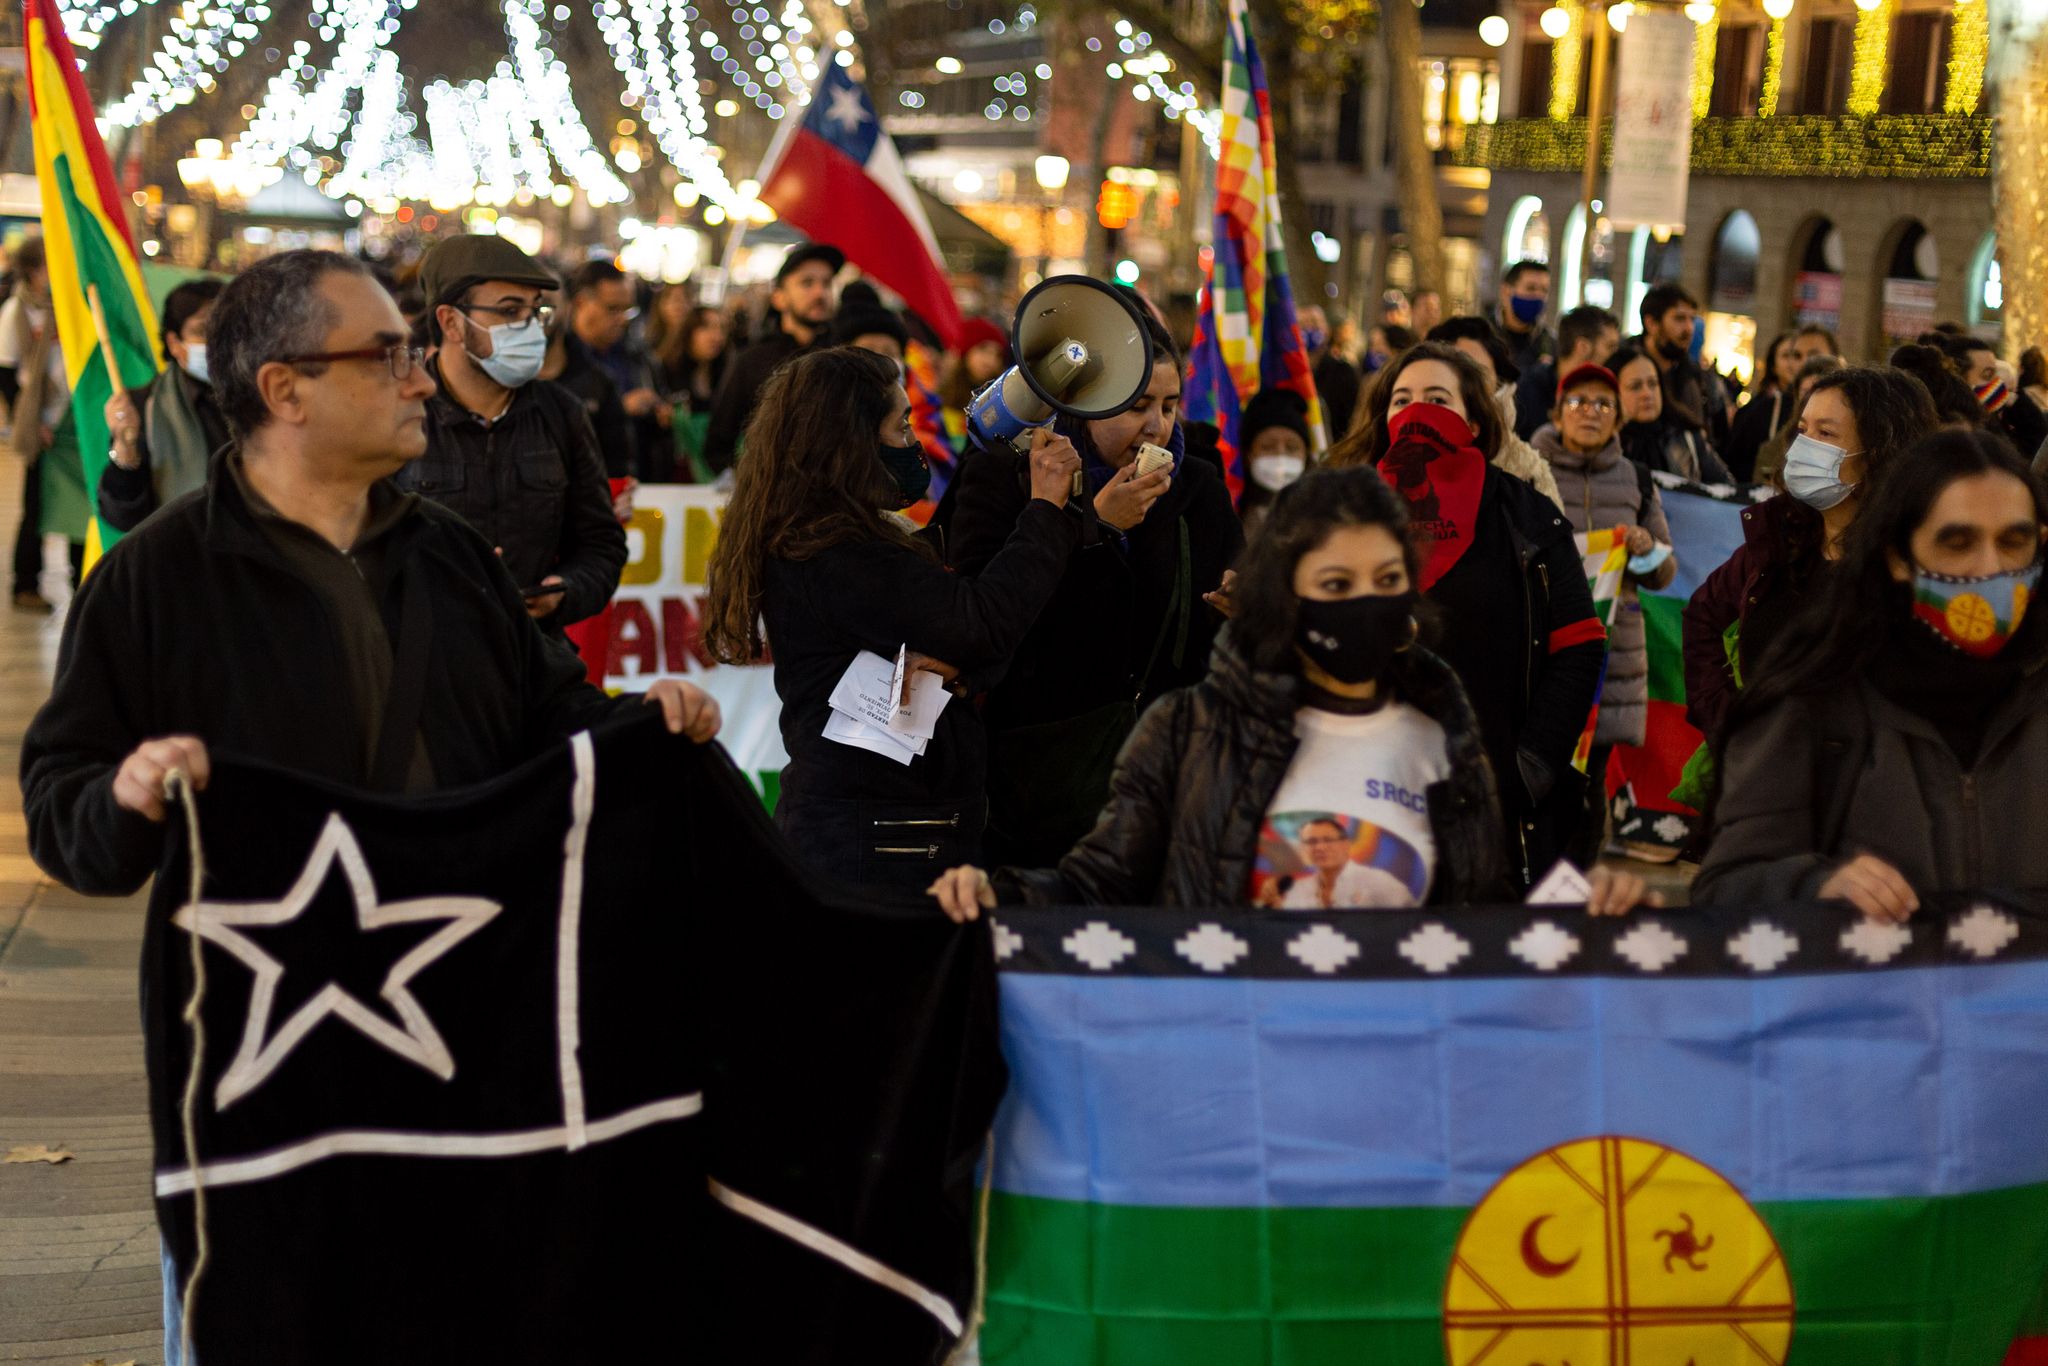 Nota e imágenes: Concurrida manifestación antifascista en Barcelona en solidaridad con Chile y Latinoamérica